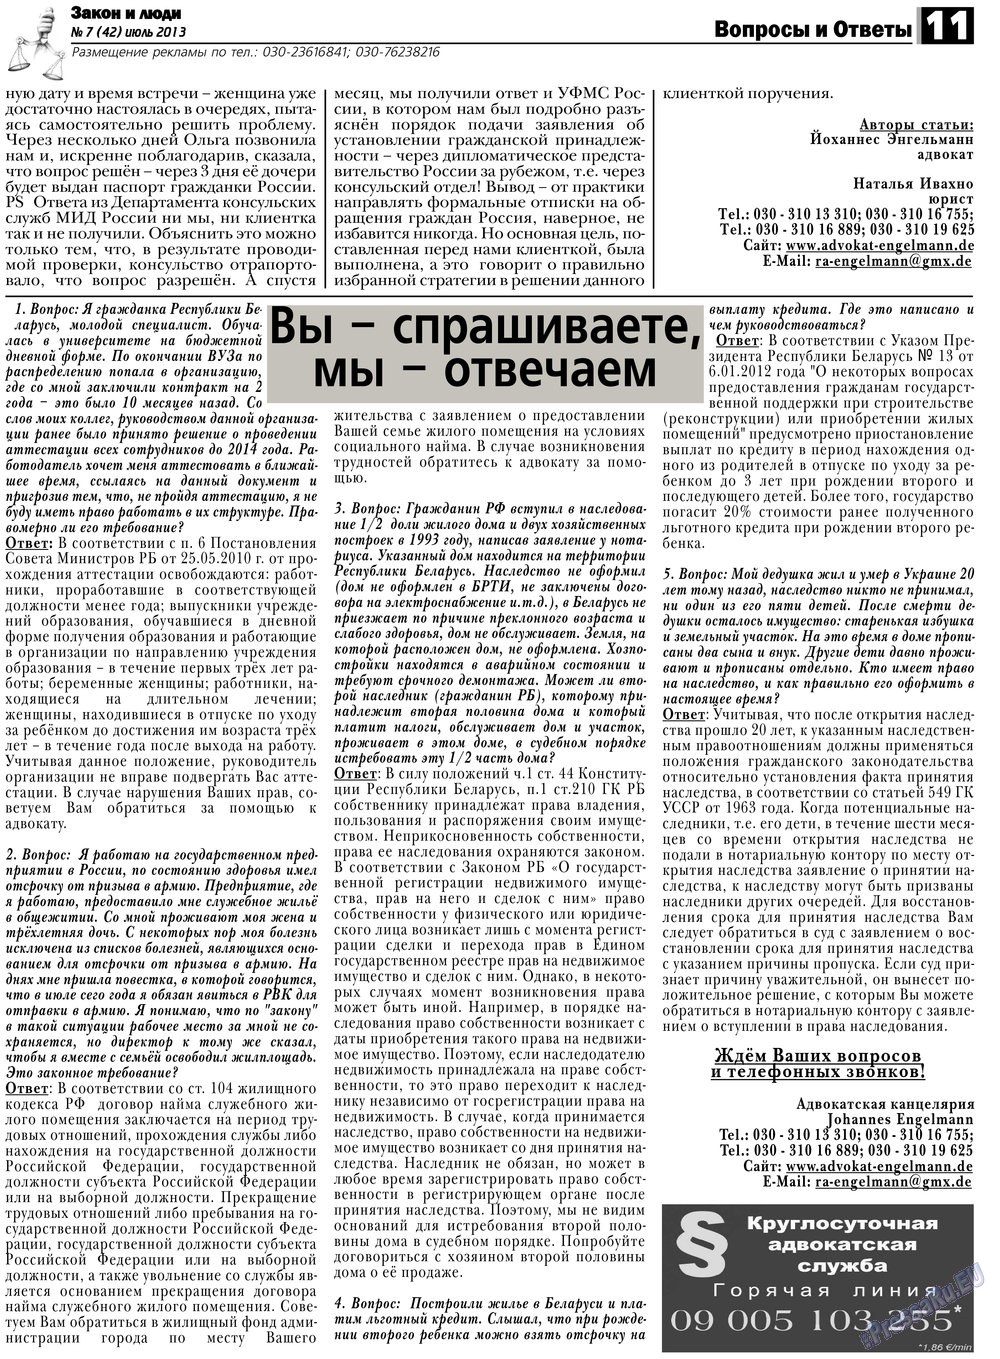 Закон и люди, газета. 2013 №7 стр.11